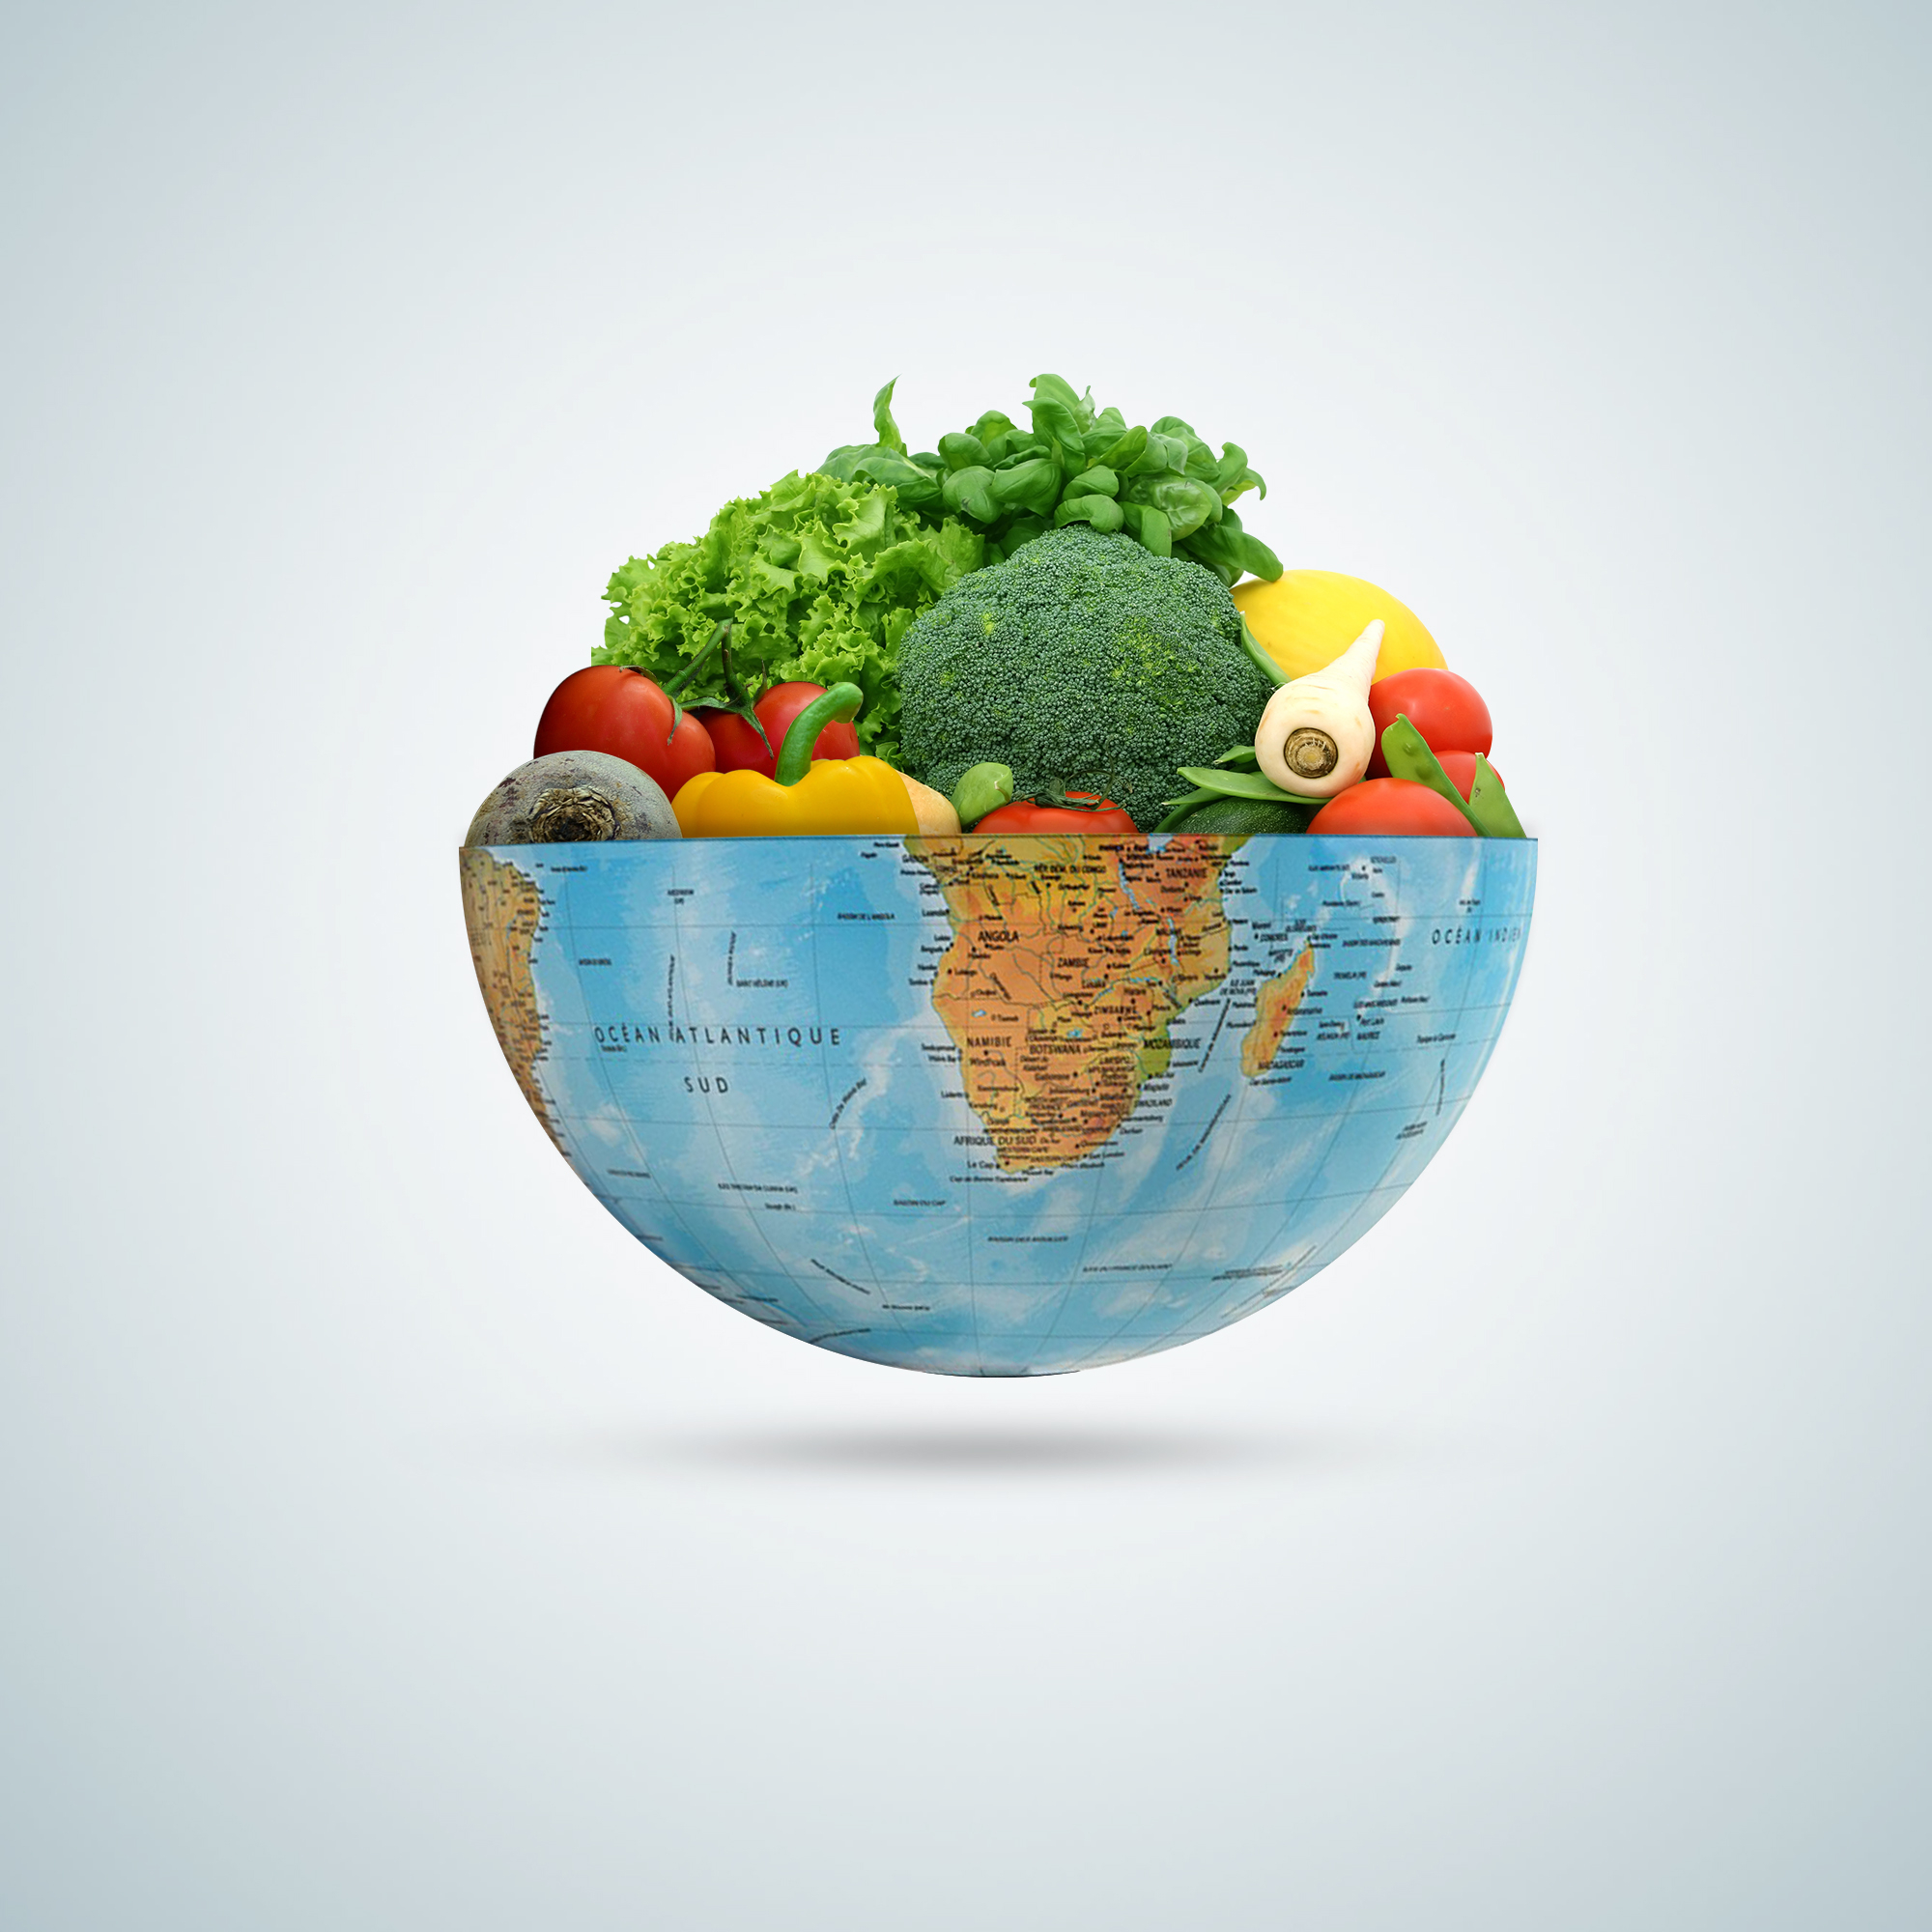 Ziua Mondială a Veganismului. Sfaturi pentru cei care doresc să devină vegani